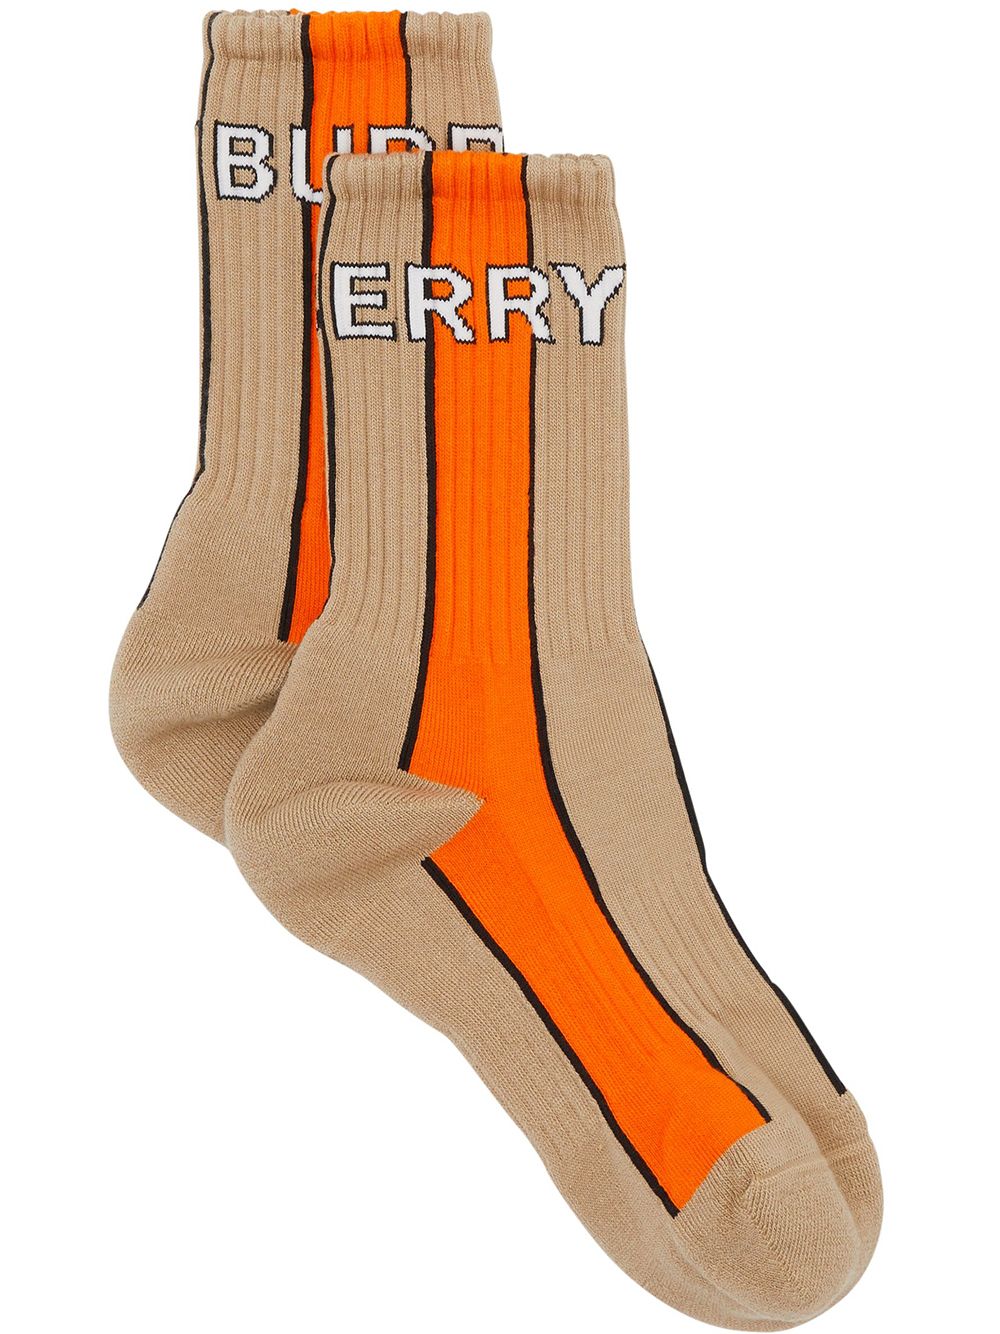 фото Burberry носки с логотипом вязки интарсия